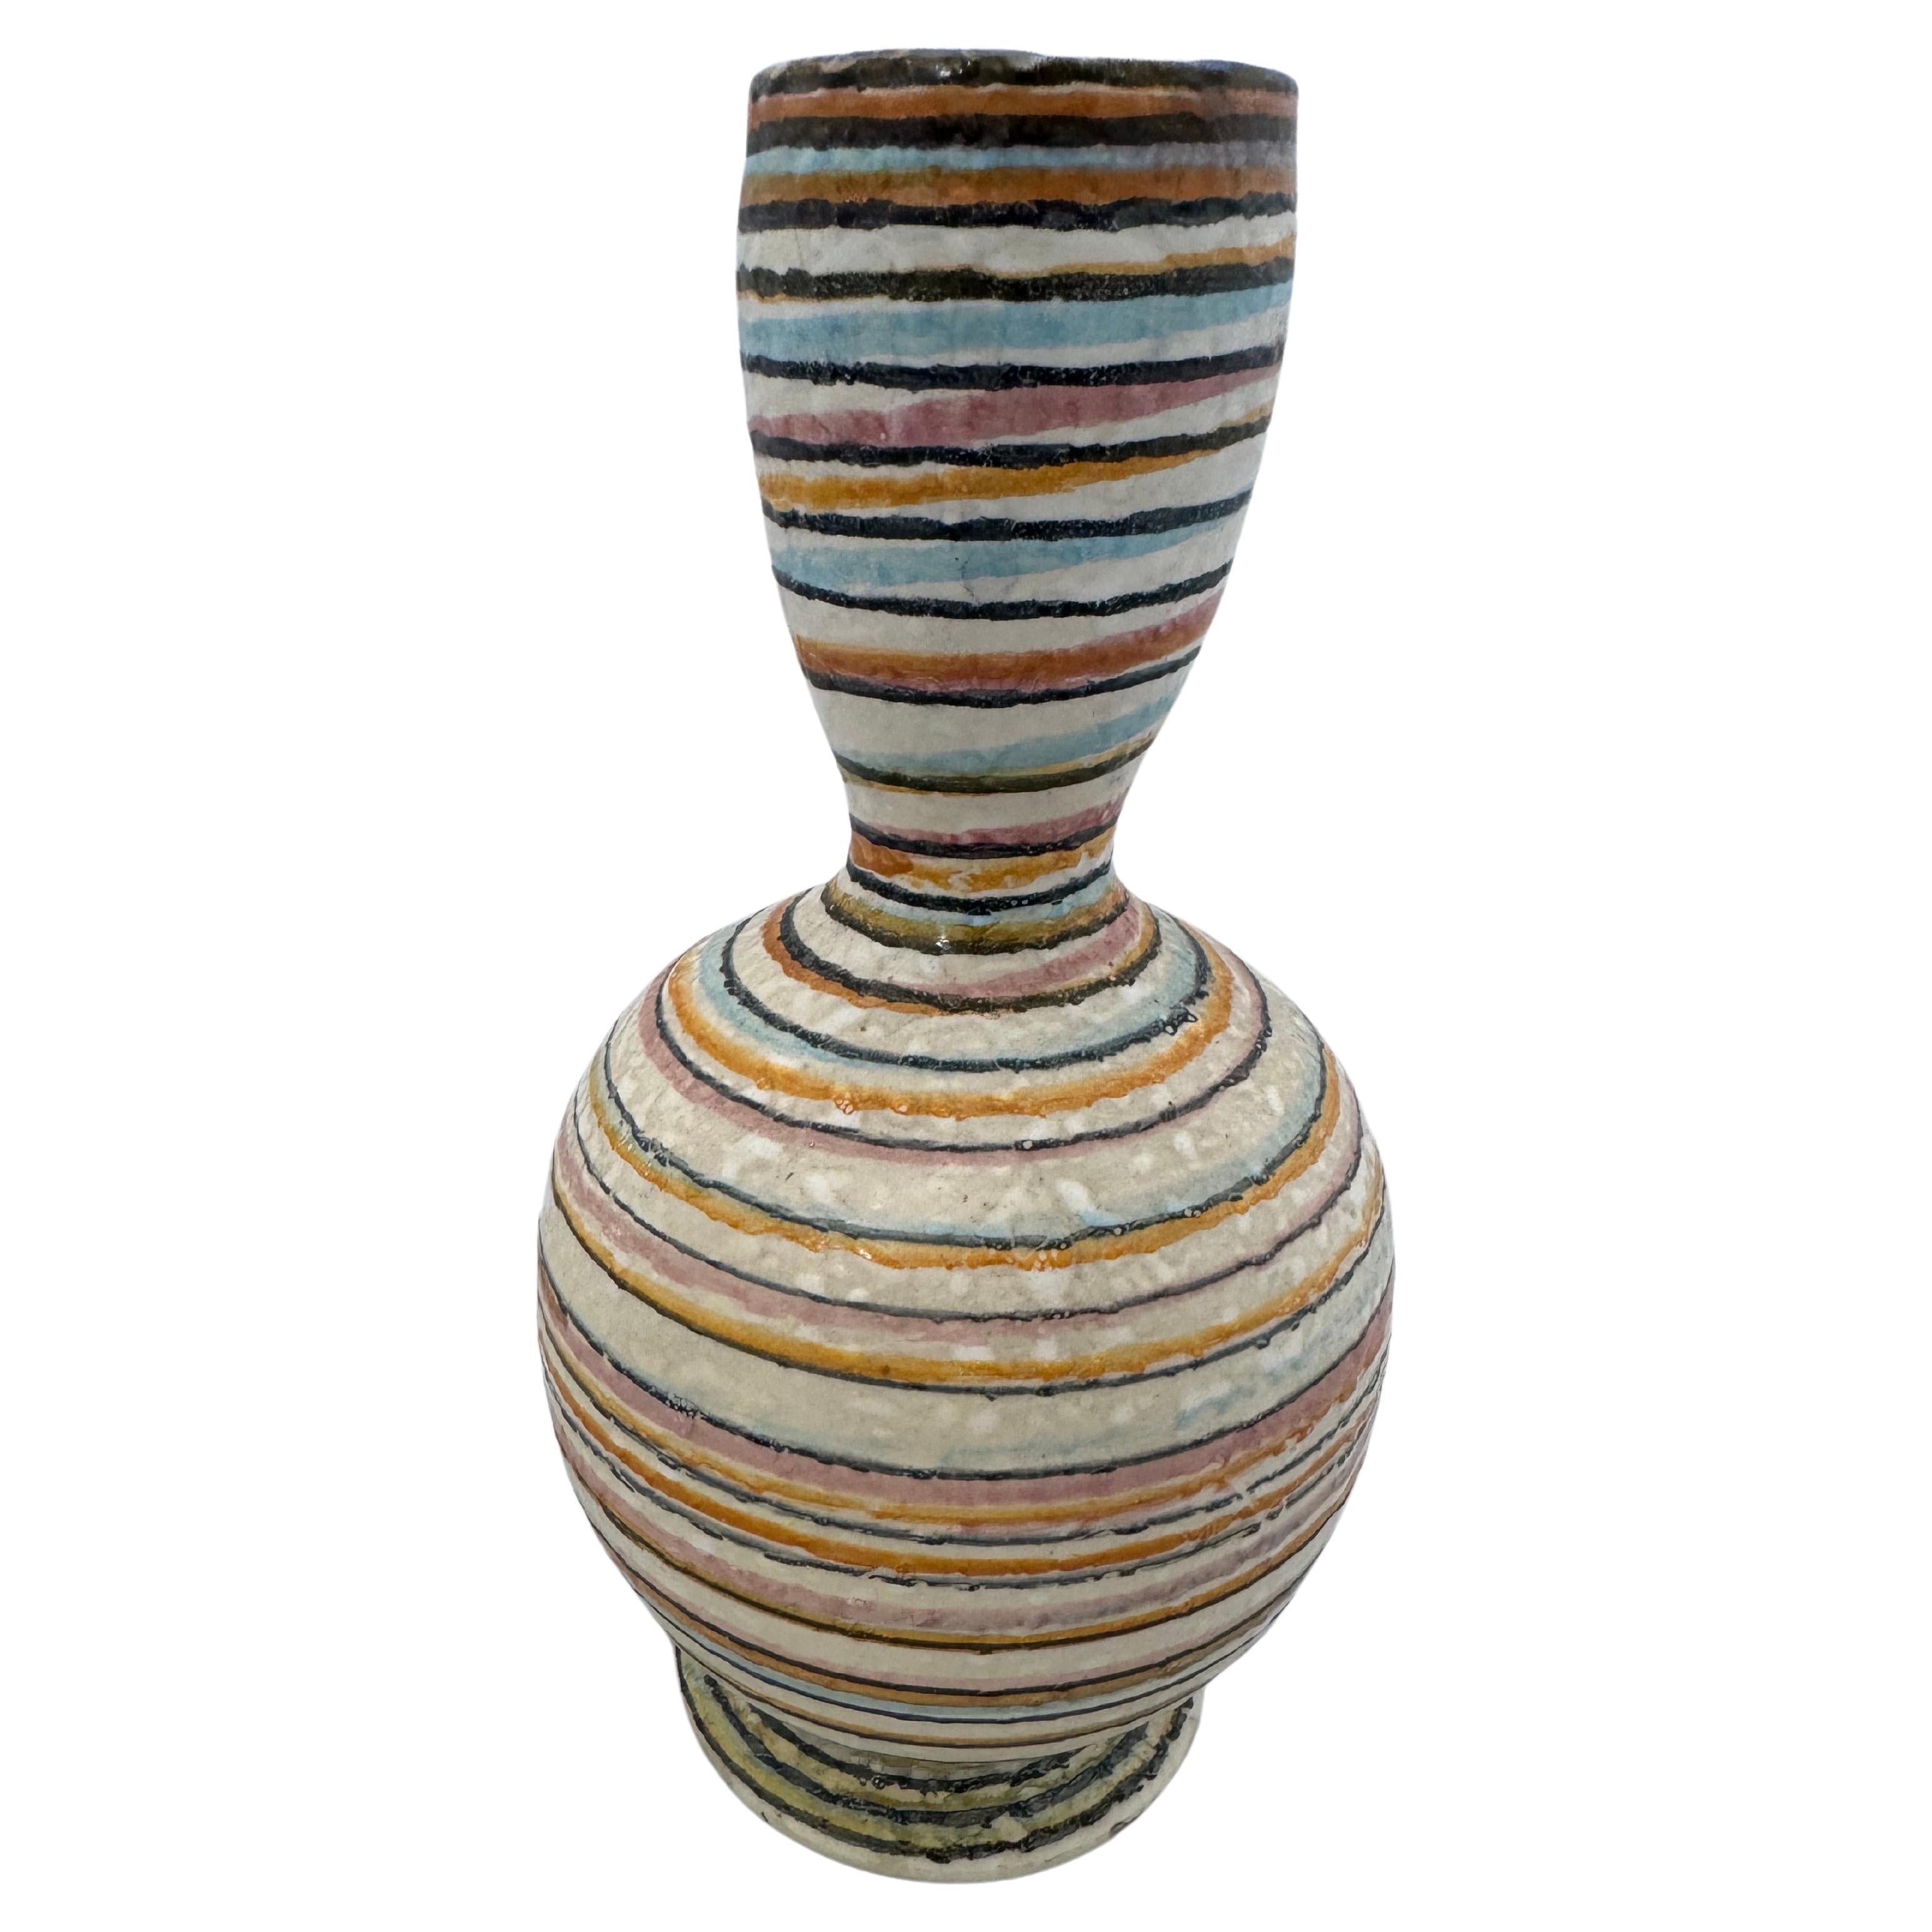 Vase à rayures colorées en poterie Vintage Studio Pottery 